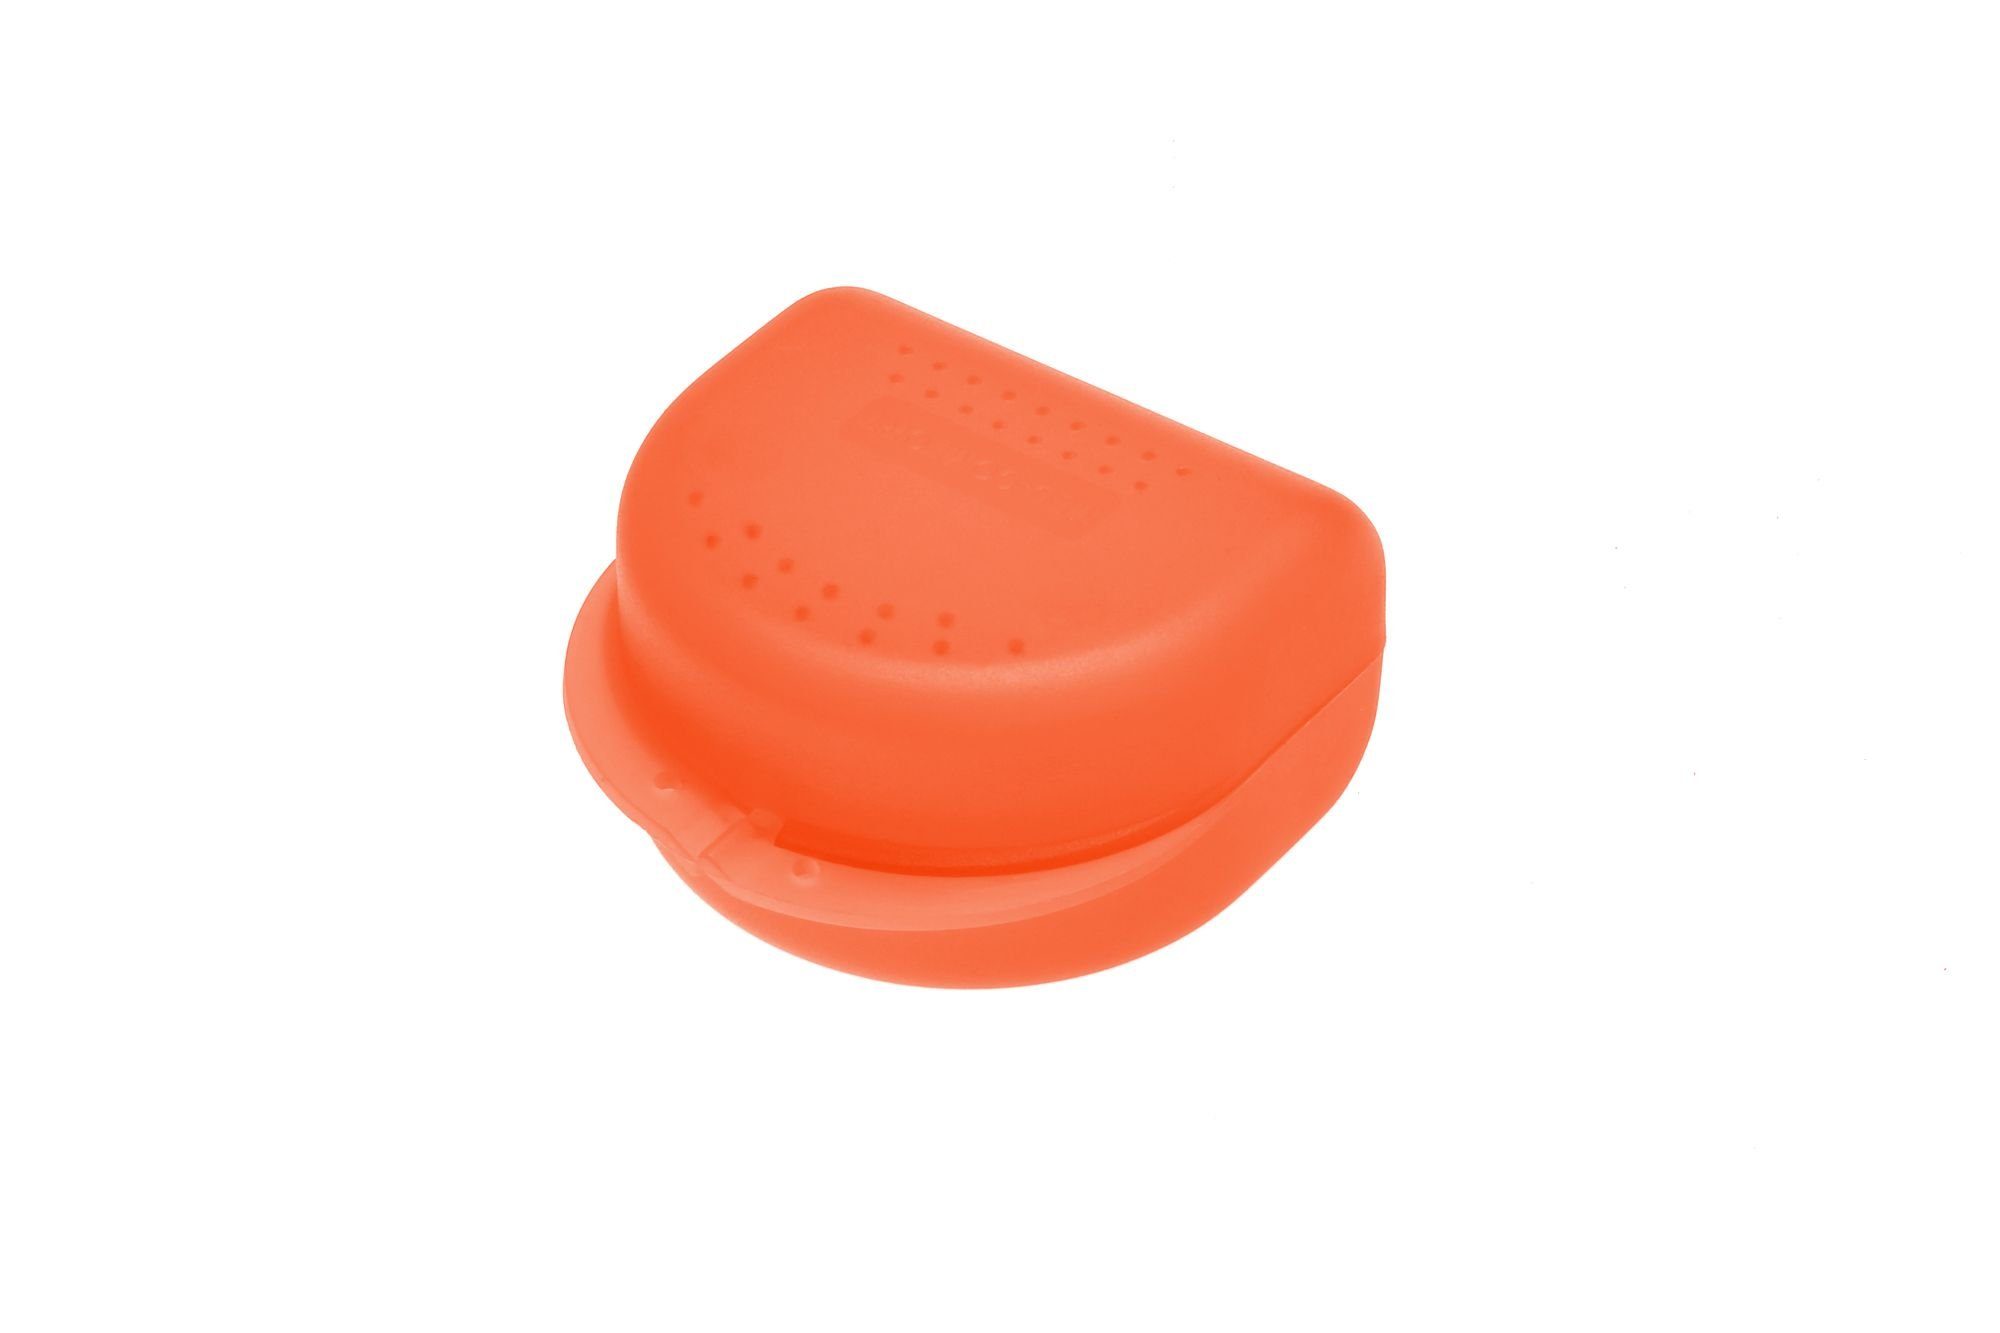 AMPri Zahnschutz Zahnspangenboxen Erwachsene in verschiedenen Farben Orange